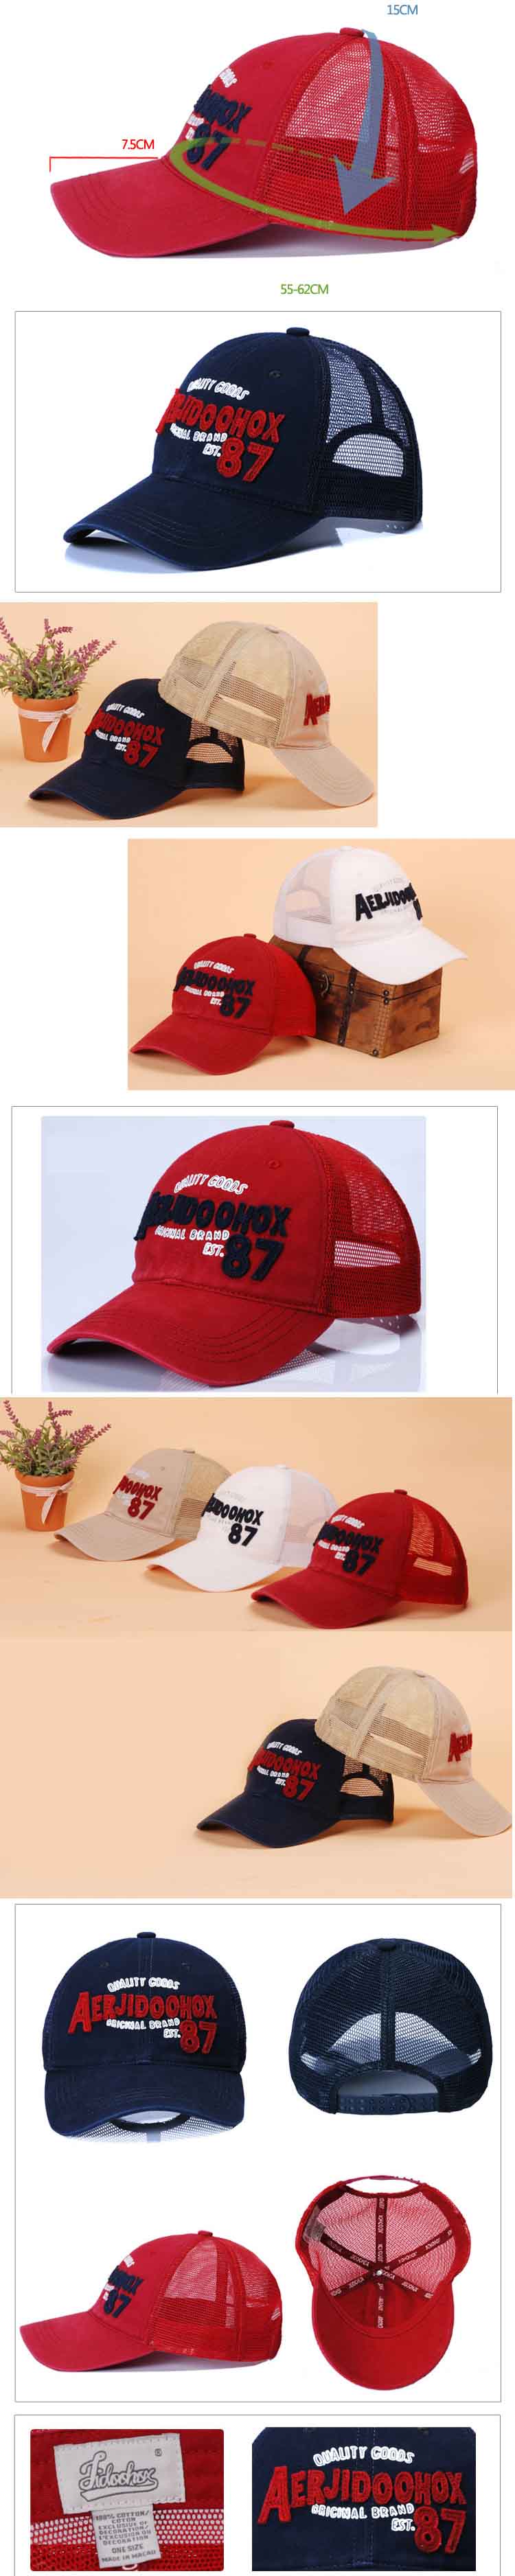 jual topi pria model casual dari brand ternama jidoohox , klik dan pesan online topi pria terlengkap hanya di pfp store